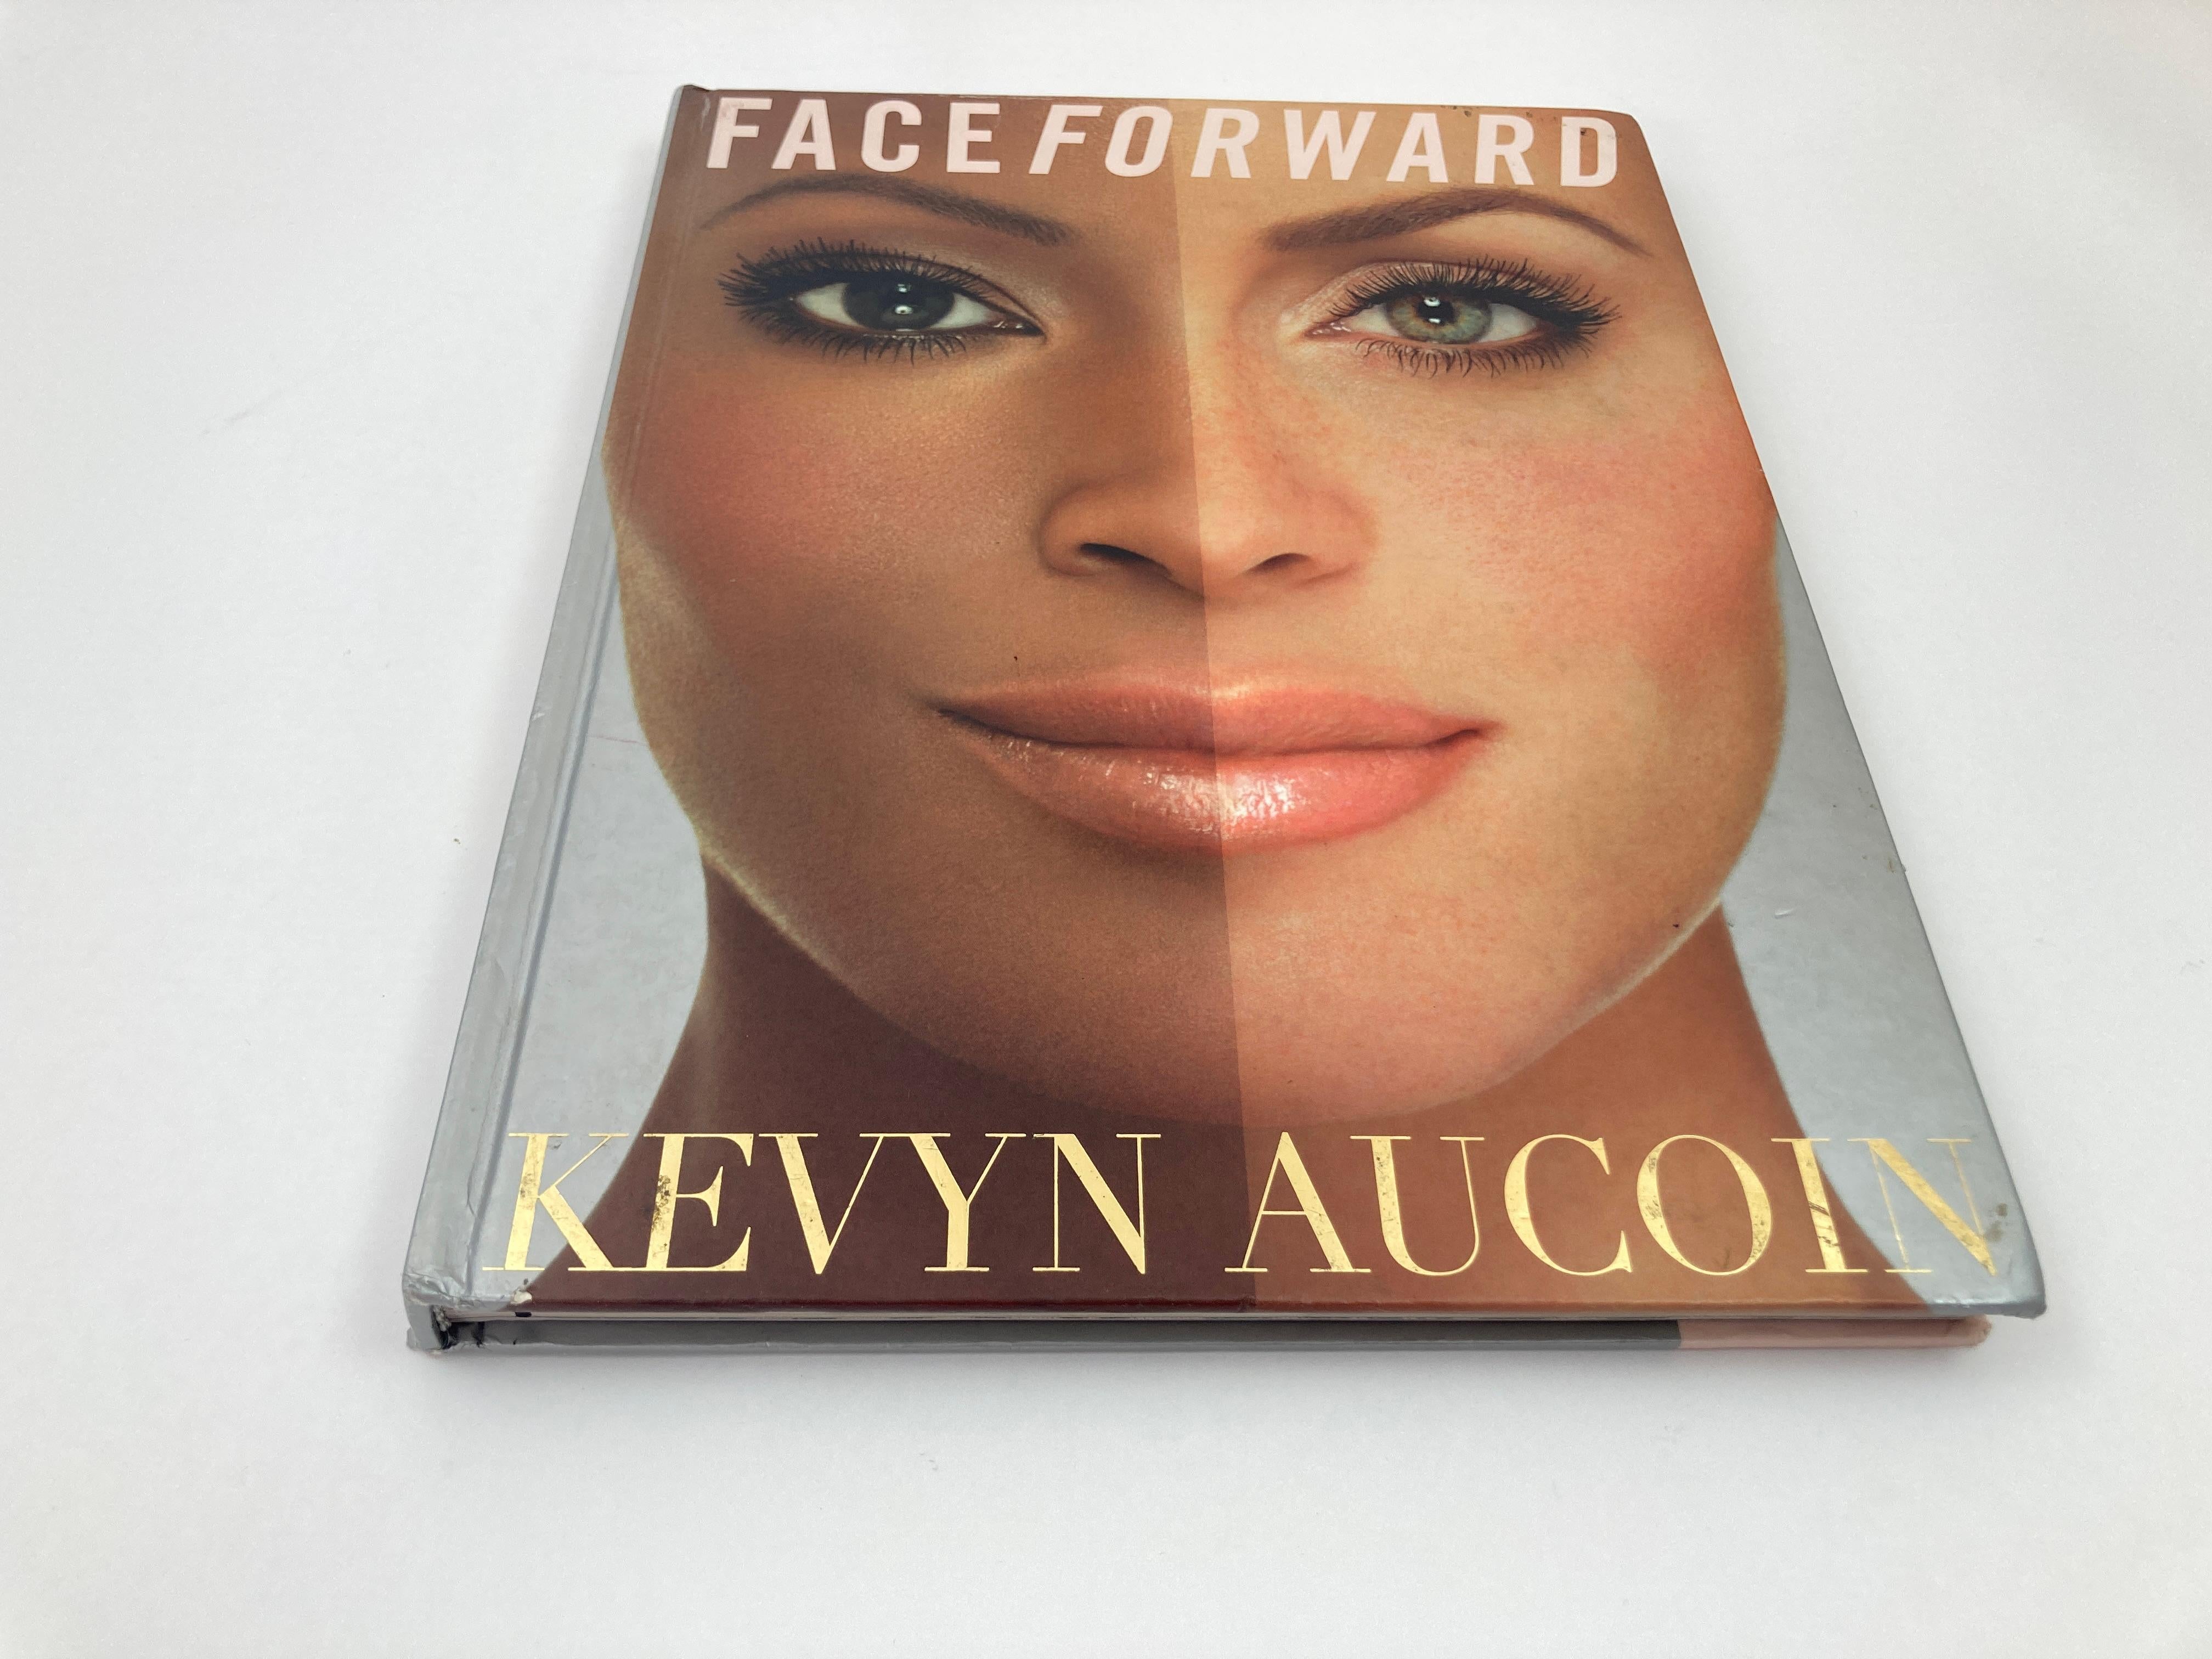 Face à l'avant  Par Kevyn Aucoin Livre à couverture rigide.
Face Forward est un livre de cosmétiques écrit par Kevyn Aucoin. C'était un best-seller du New York Times. Ce livre a été largement remarqué pour avoir présenté pour la première fois au